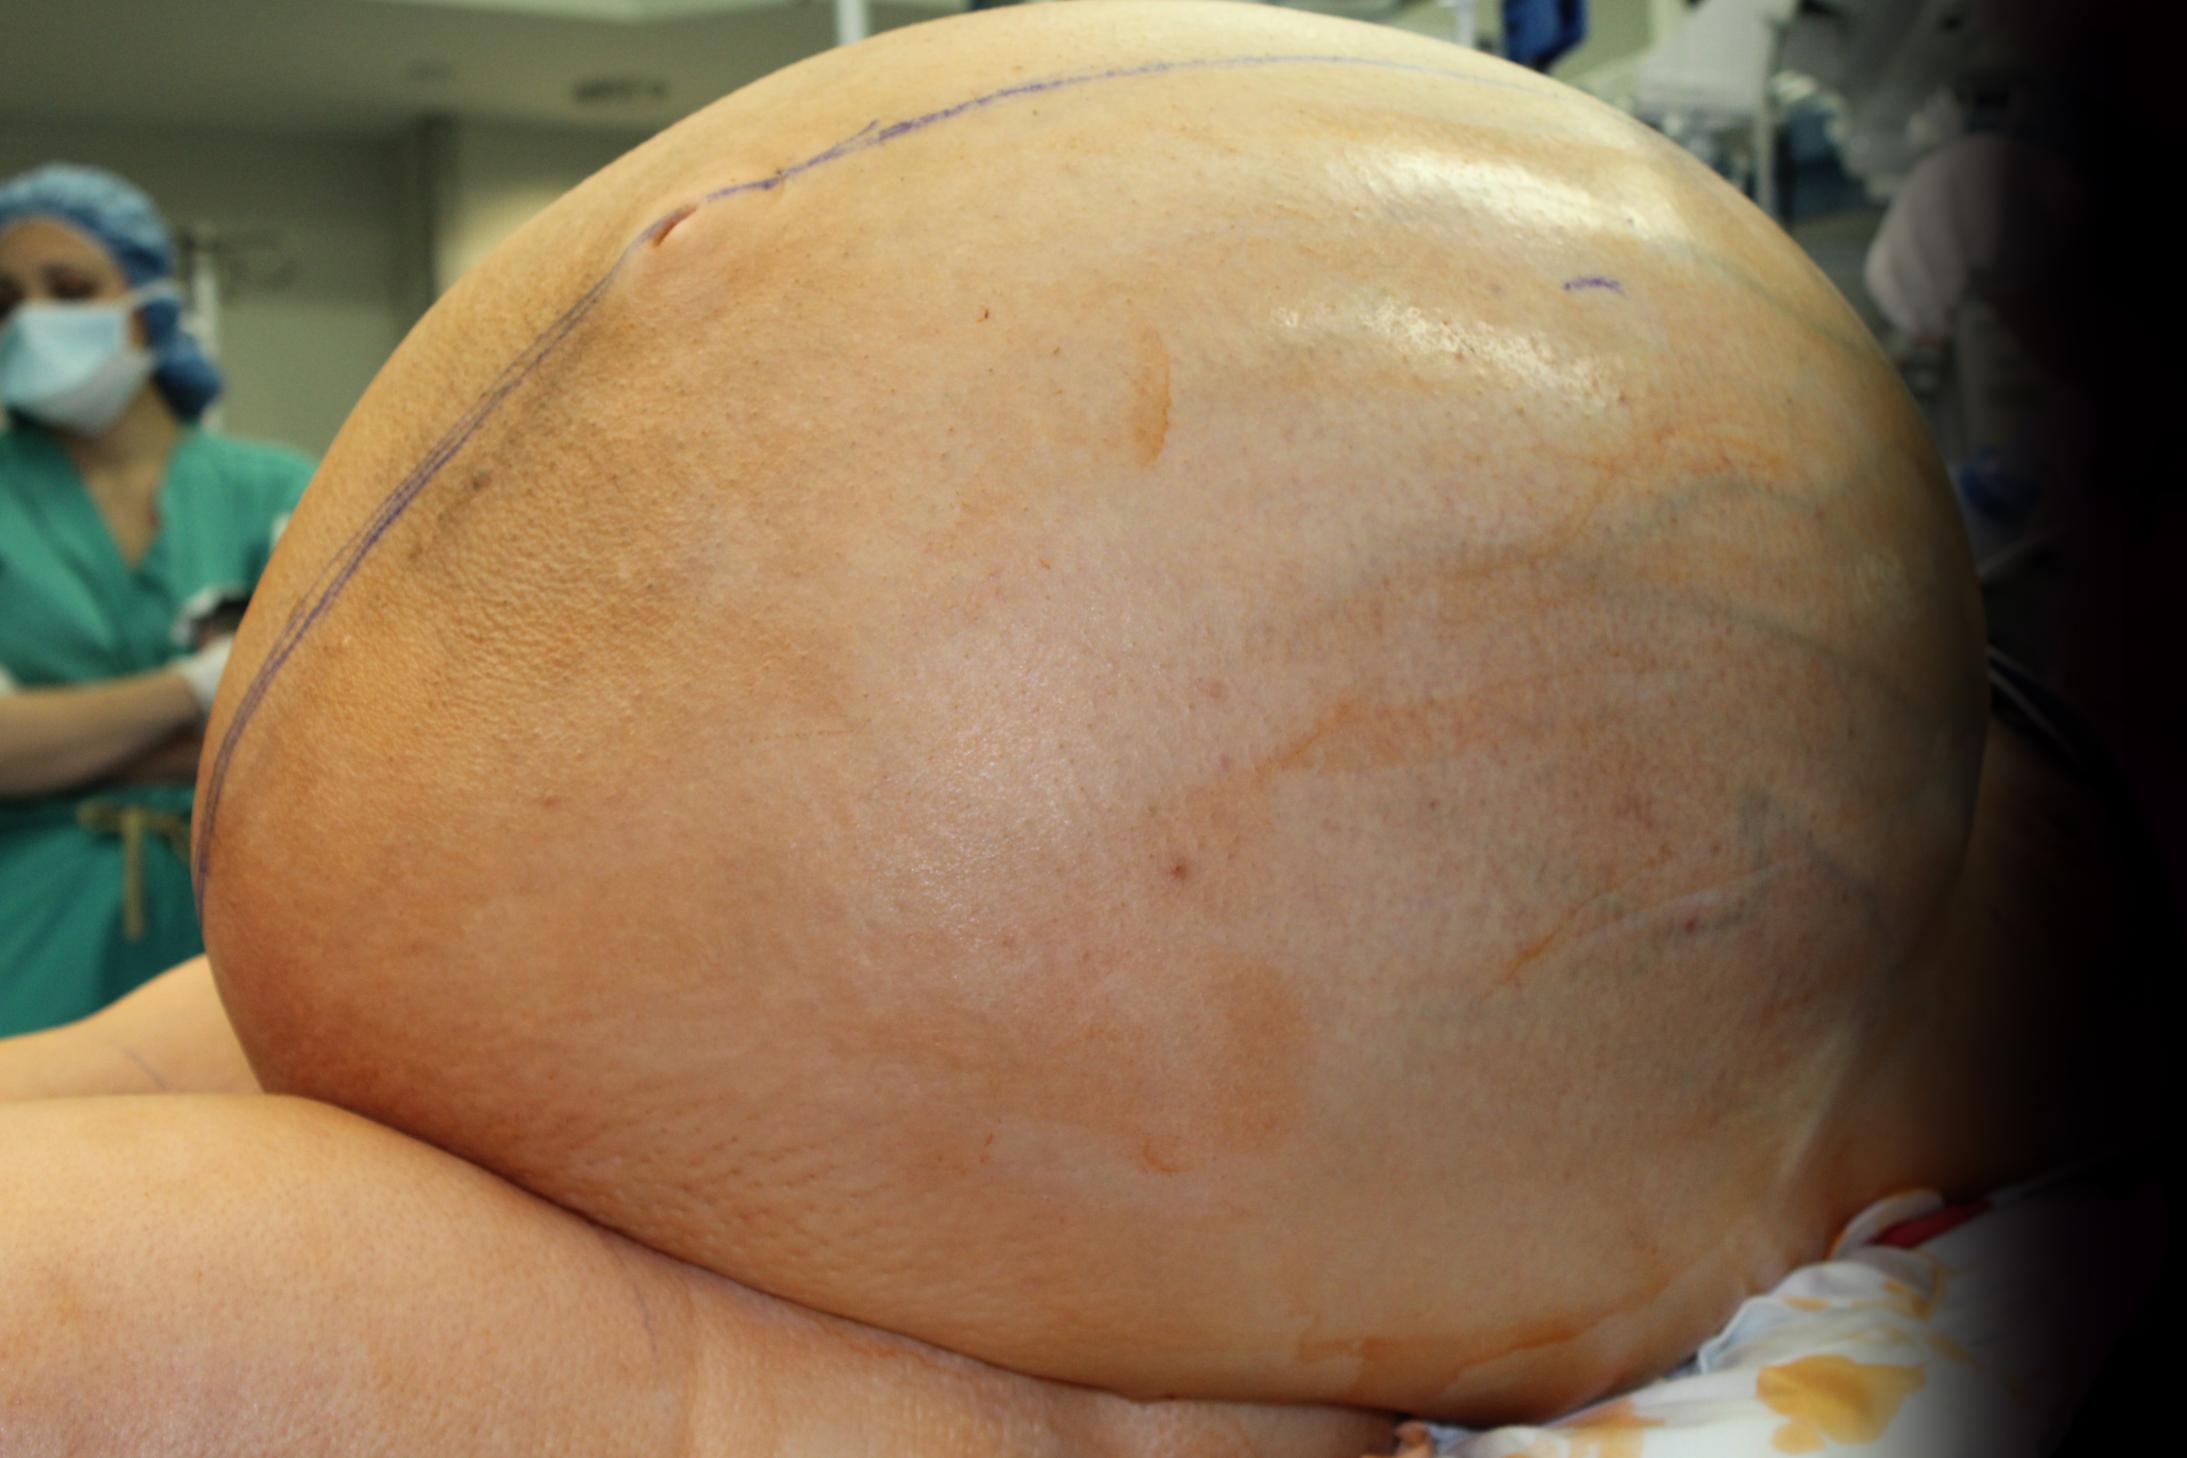 180503164342-01-ovarian-tumor-132-pounds.jpg